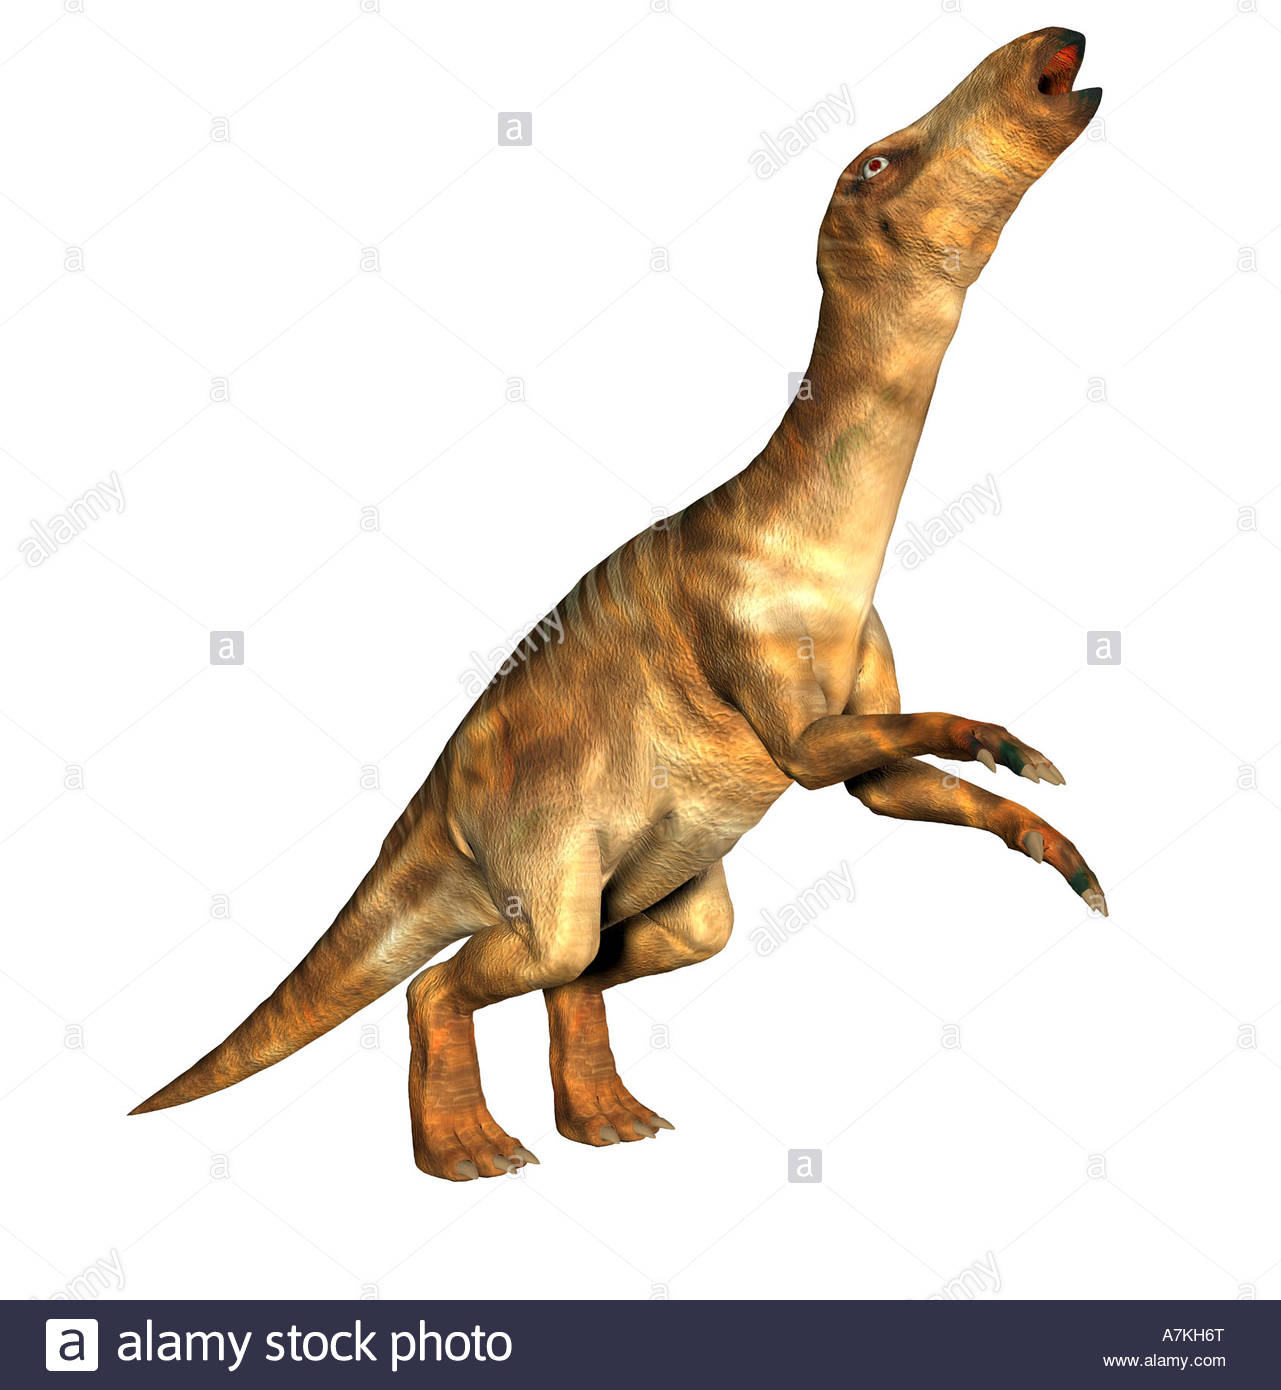 Iguanodon Dinosaur Stock Photo, Royalty Free Image: 11863007.